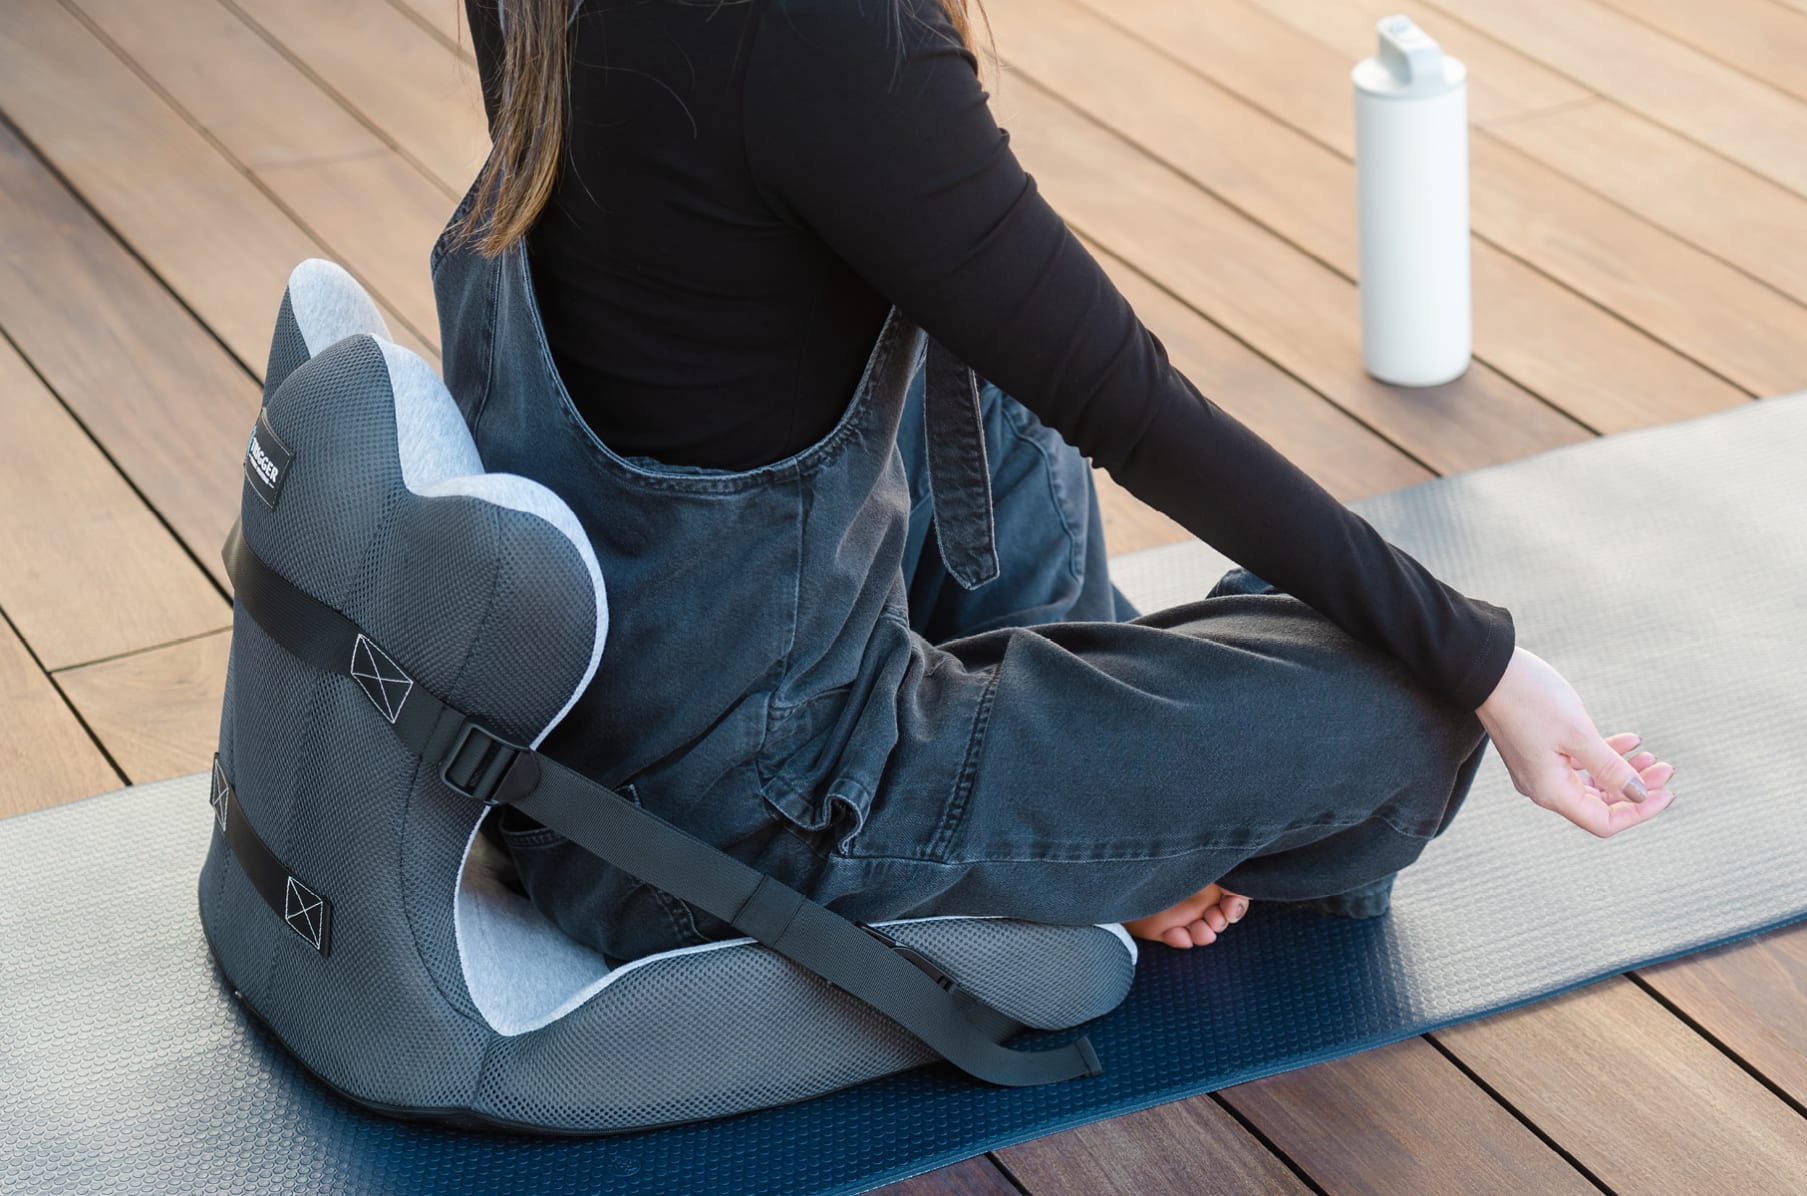 Kickstarter Review] Lifted Lumbar - The Posture-Fixing Seat Cushion